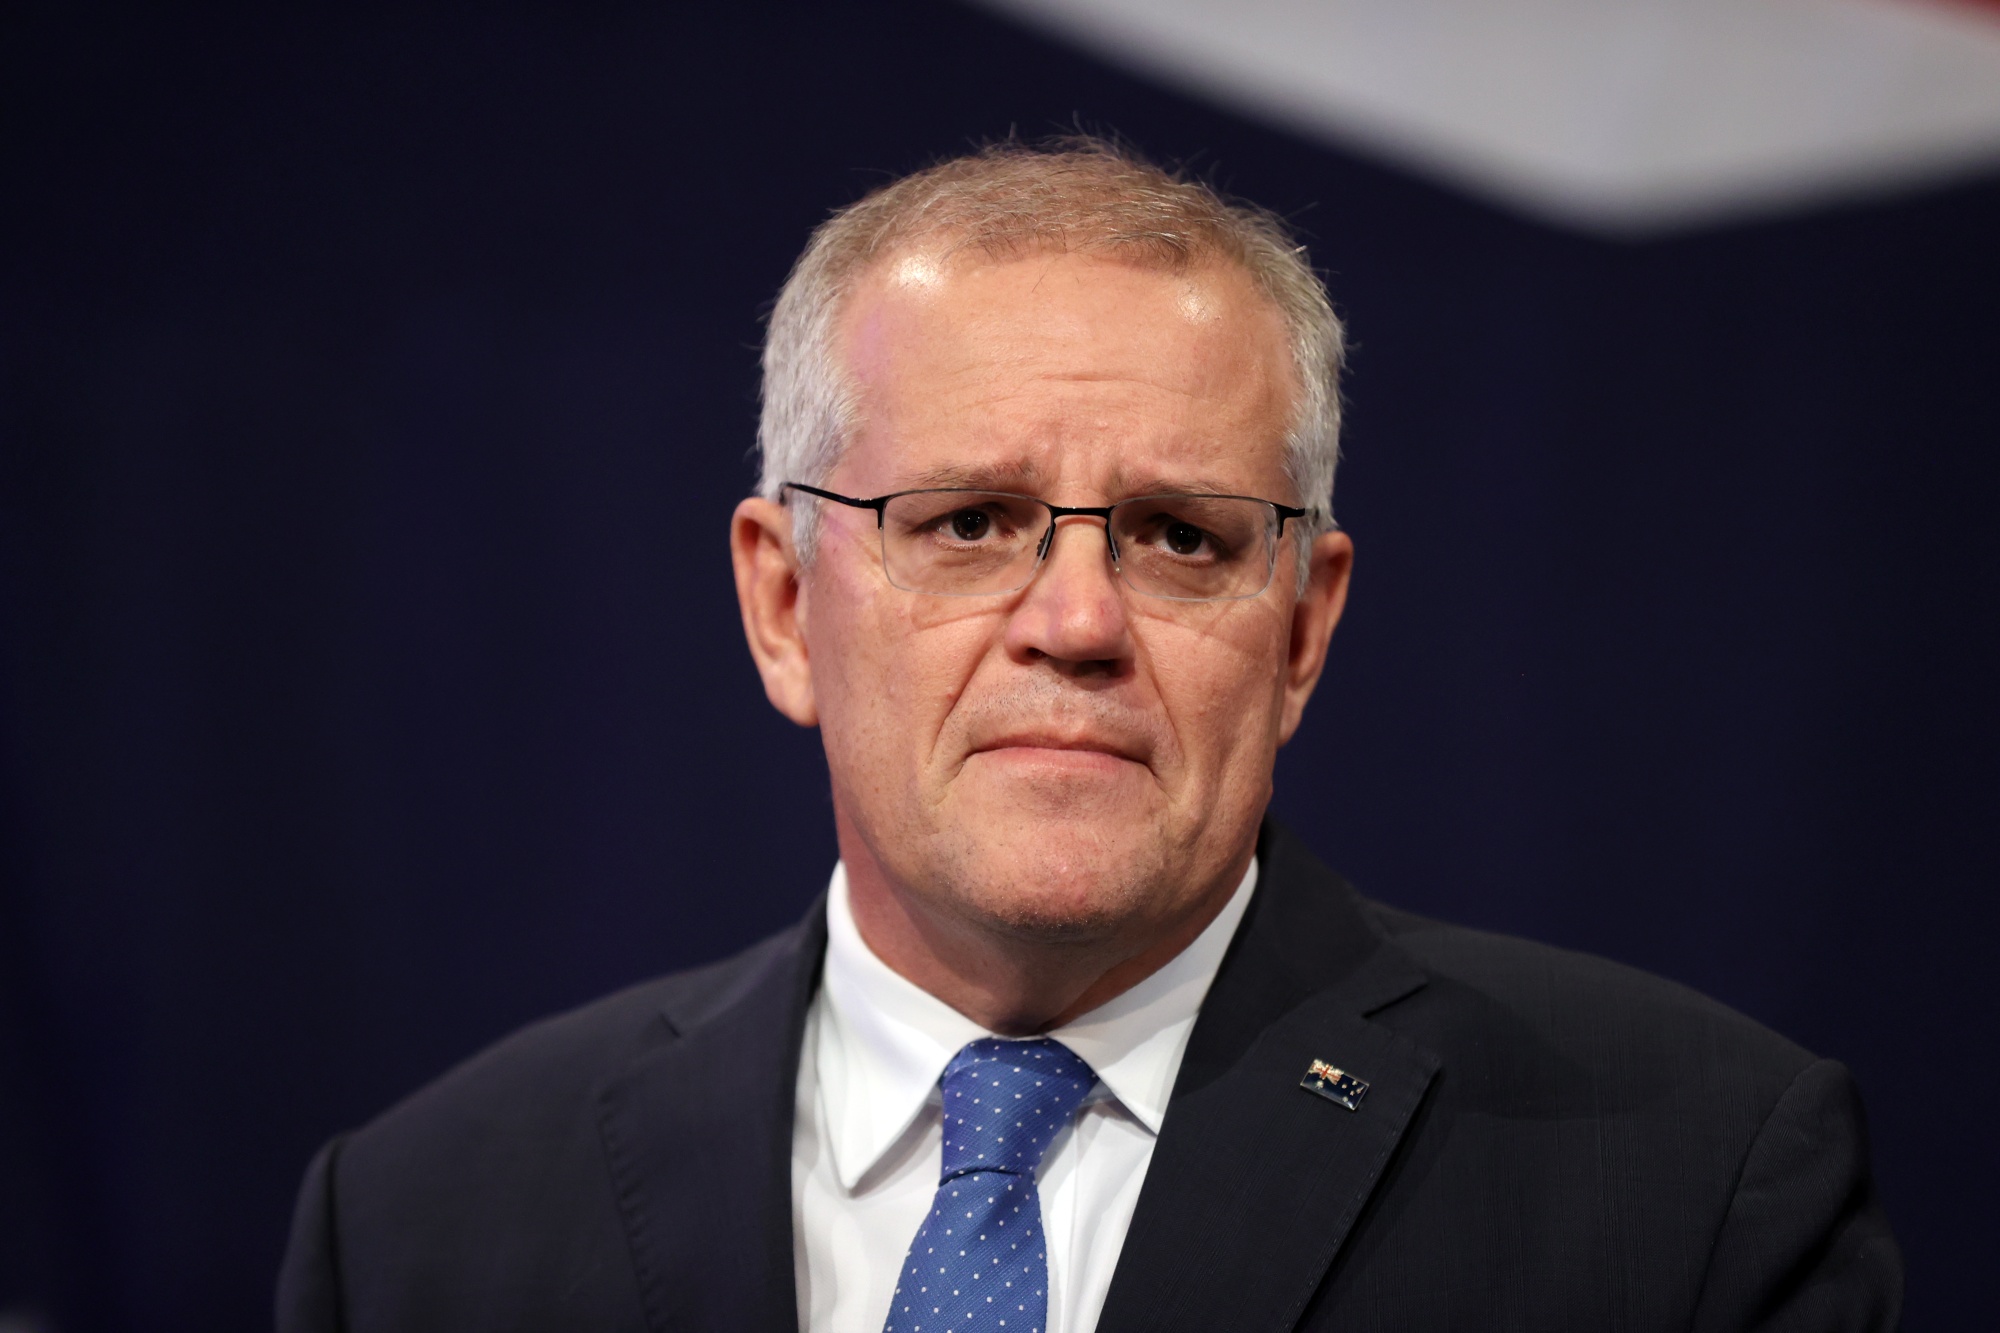 Scott Morrison, Australia's former prime minister.